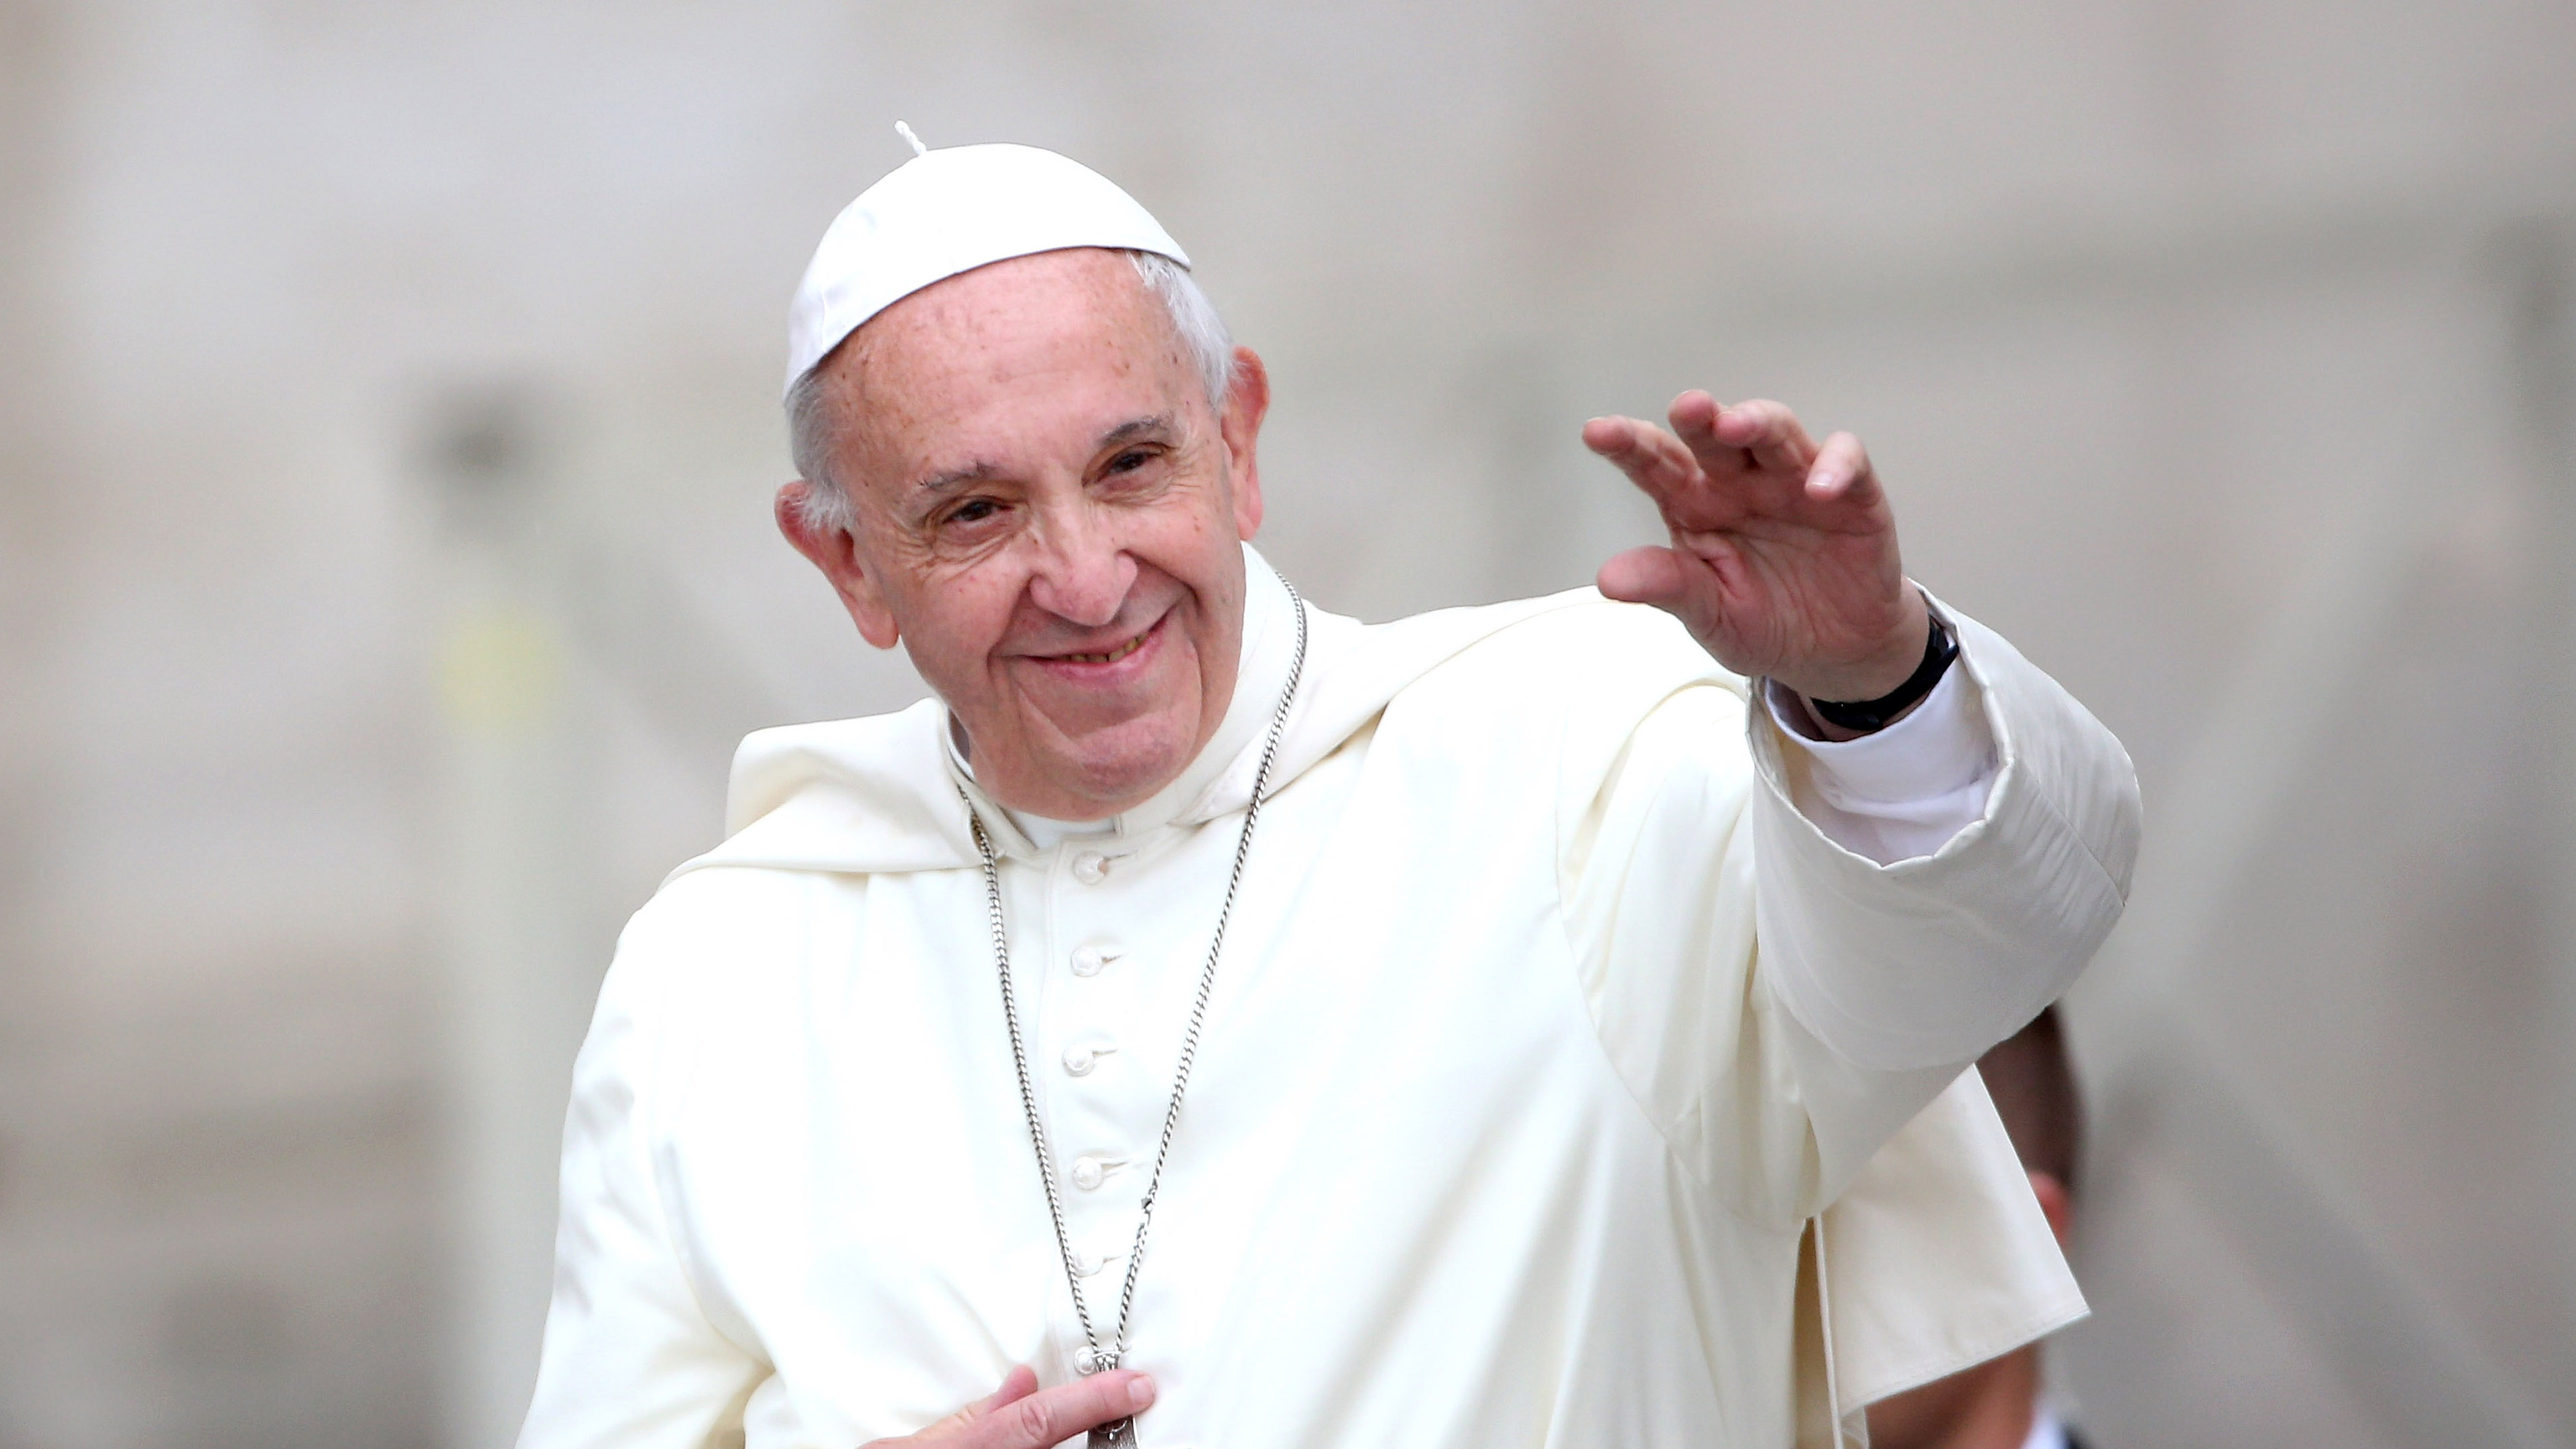 Meglepő titkot árult el magáról Ferenc pápa